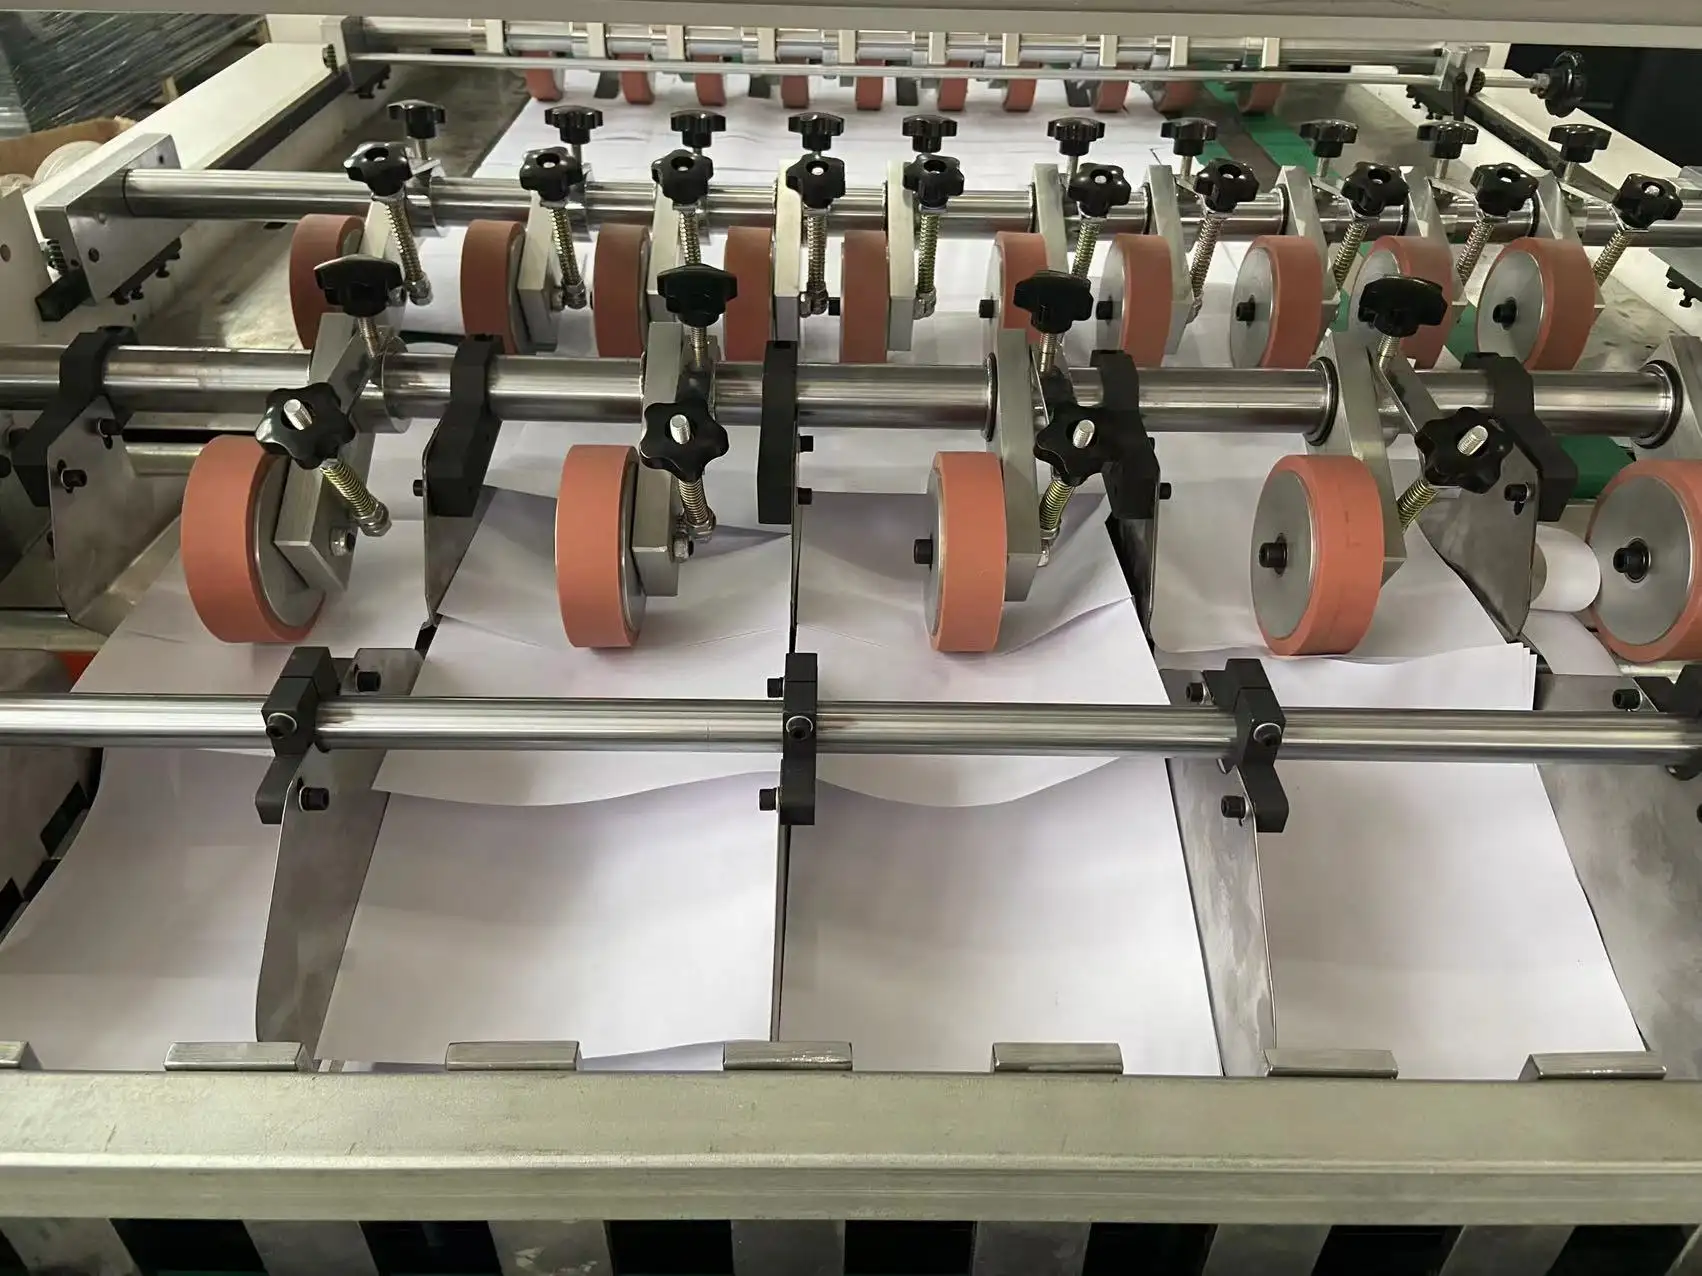 Máquina de corte de folhas de papel a4/a3, tamanho, copiar folhas de papel e reams, máquina de embrulho, cópia automática completa, linha de produção de papel